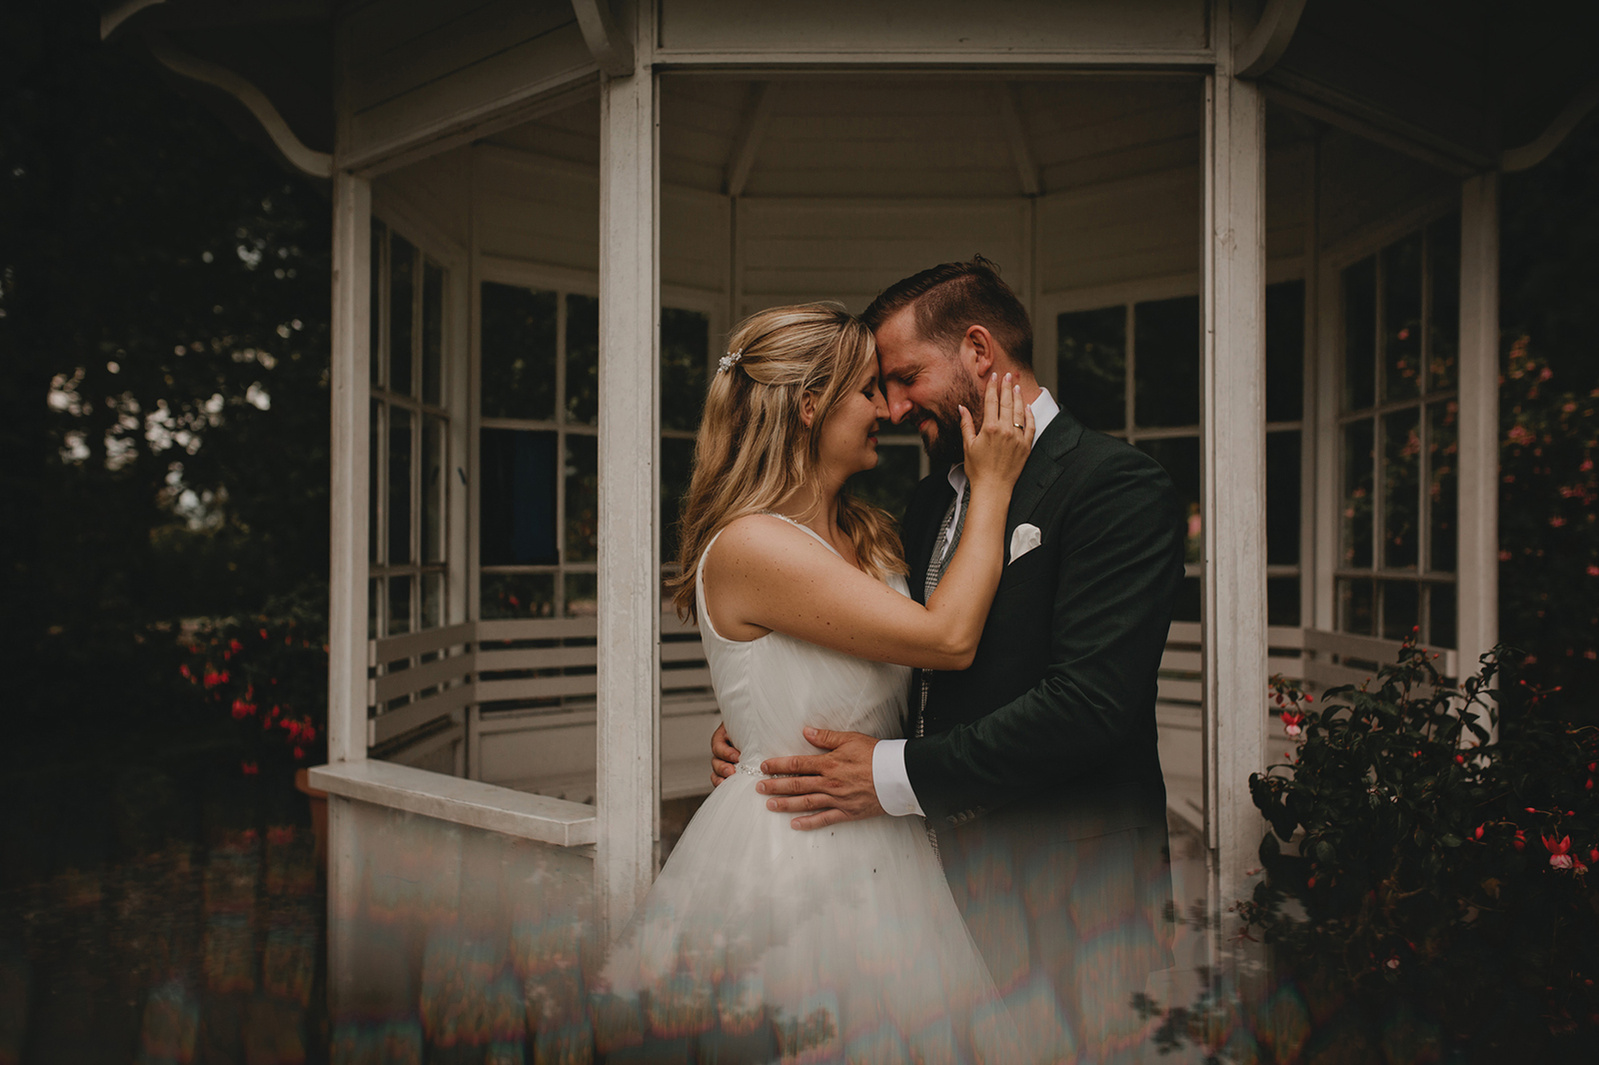 am Pavillon im Britzer Garten kann man romantische Hochzeitsfotos machen